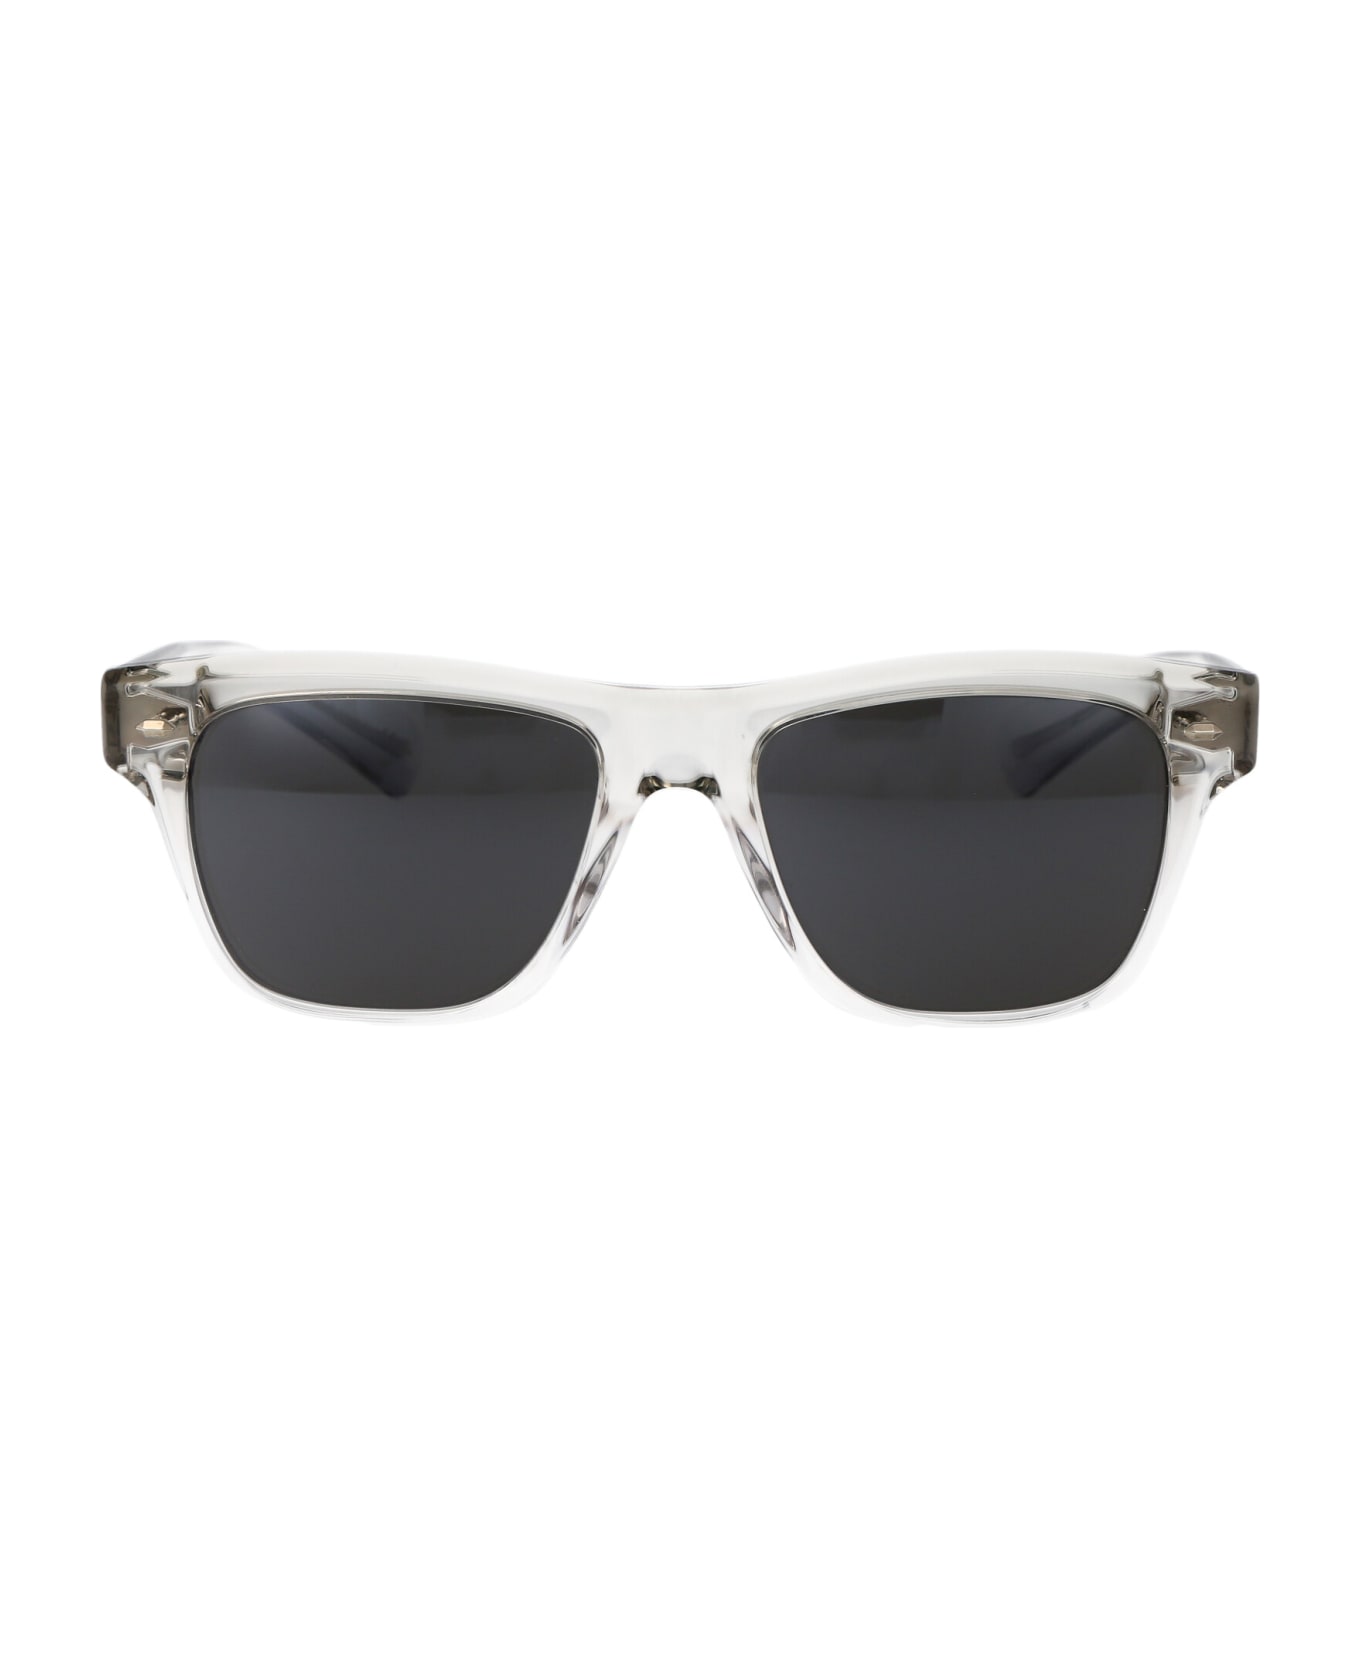 Oliver Peoples Oliver Sixties Sun Sunglasses - 1752R5 Black Diamond/Crystal Gradient